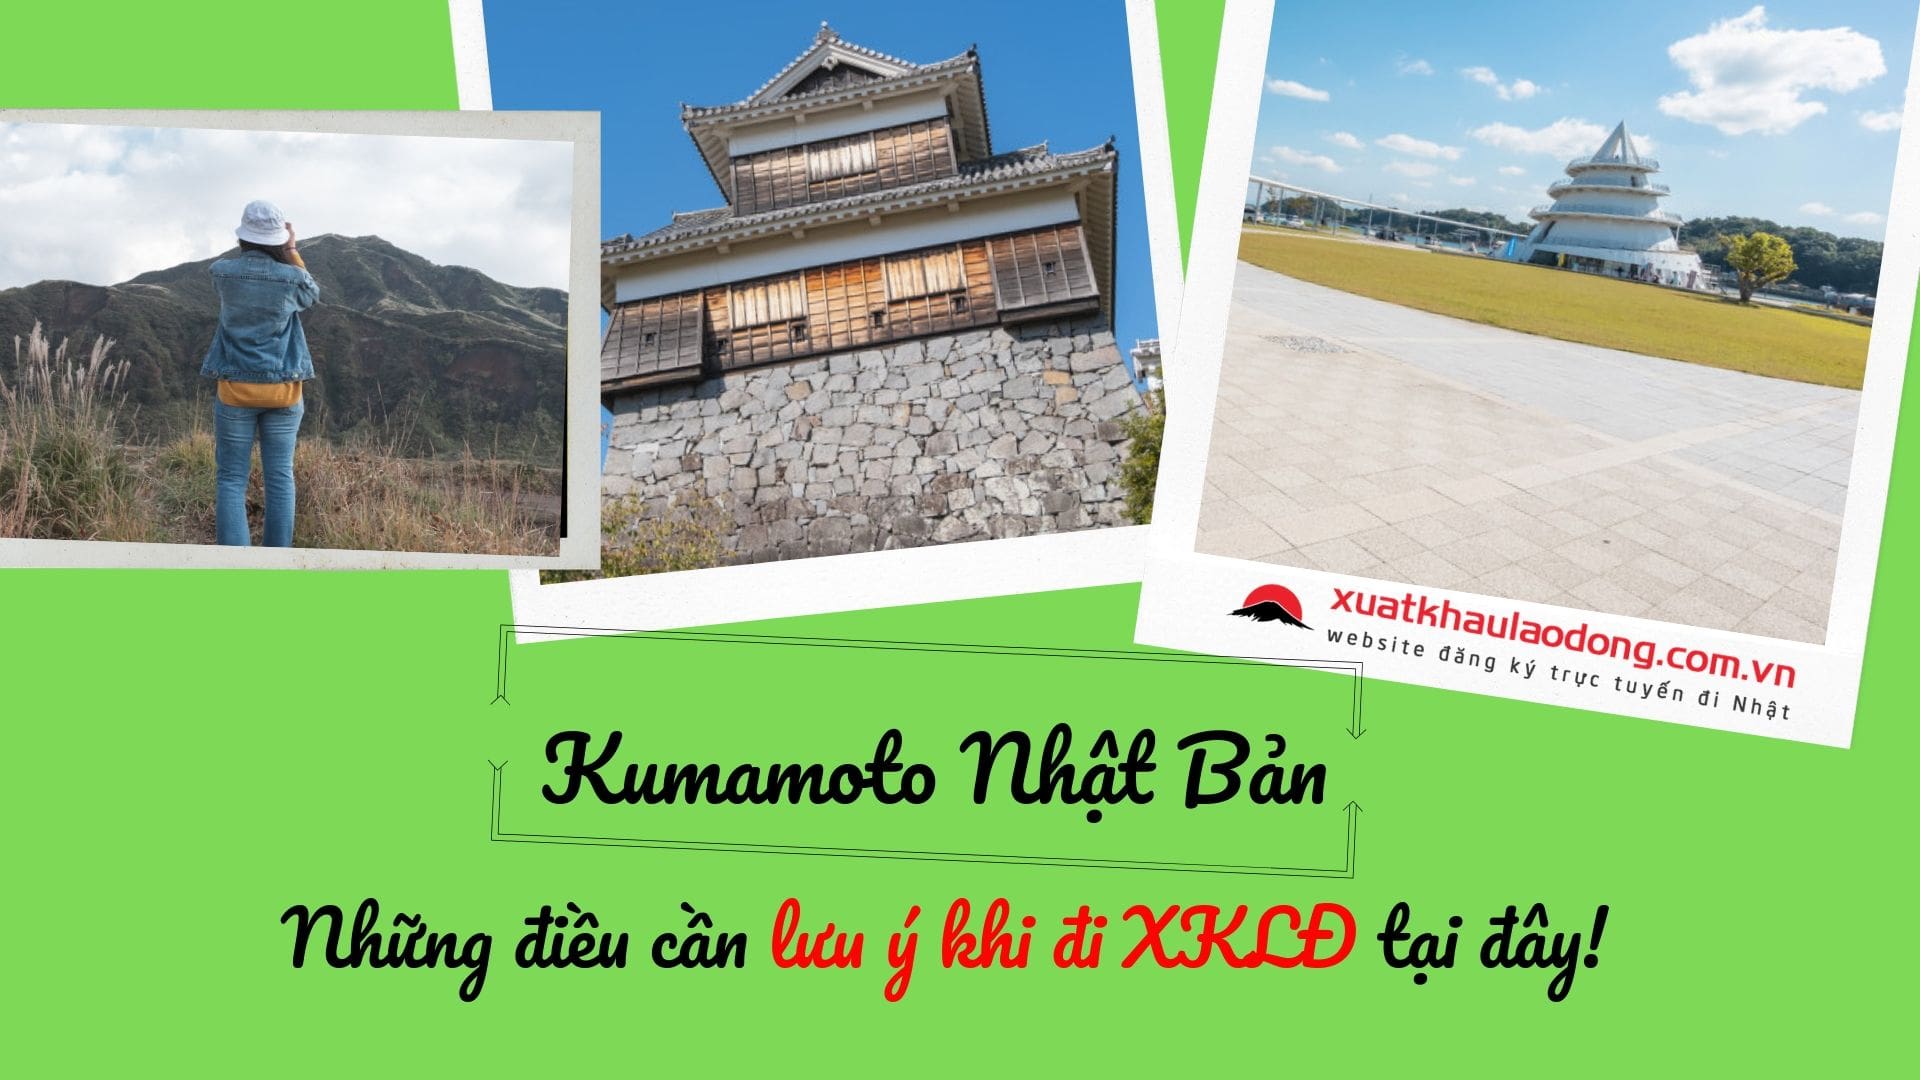 Kumamoto Nhật bản – Những điều cần lưu ý khi đi xuất khẩu lao động tại đây!